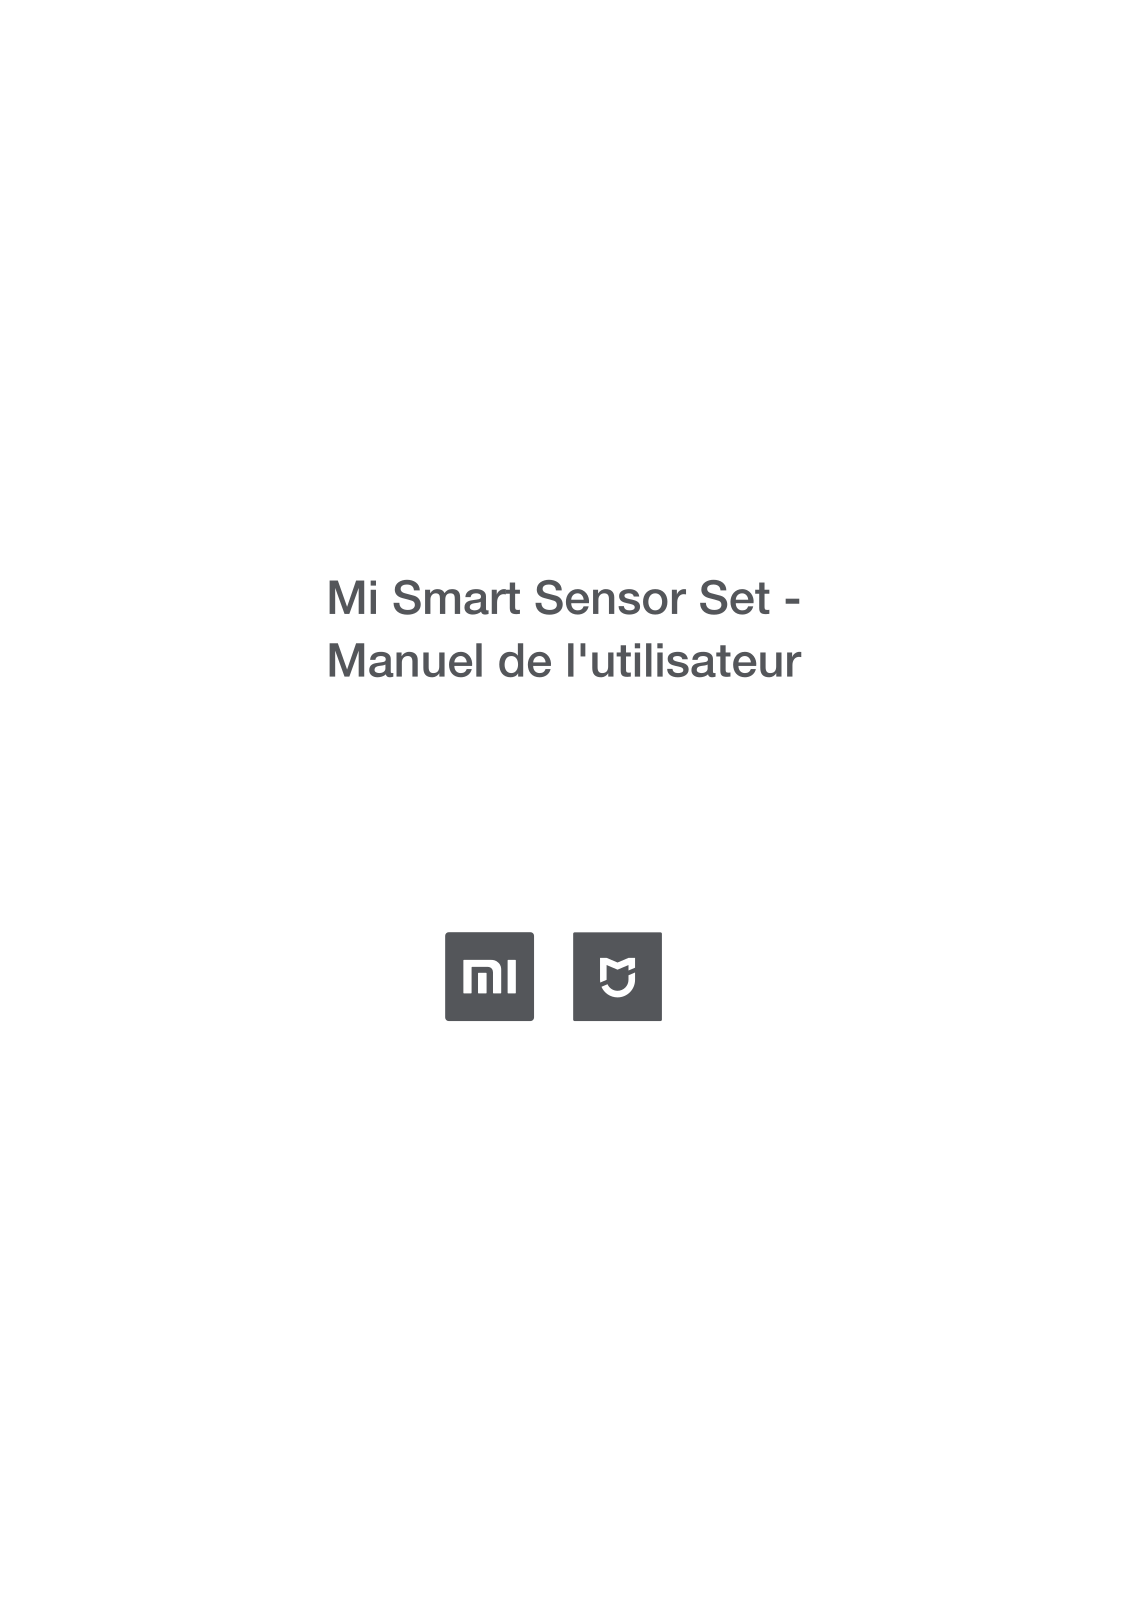 XIAOMI Mi Smart Sensor Set User Manual